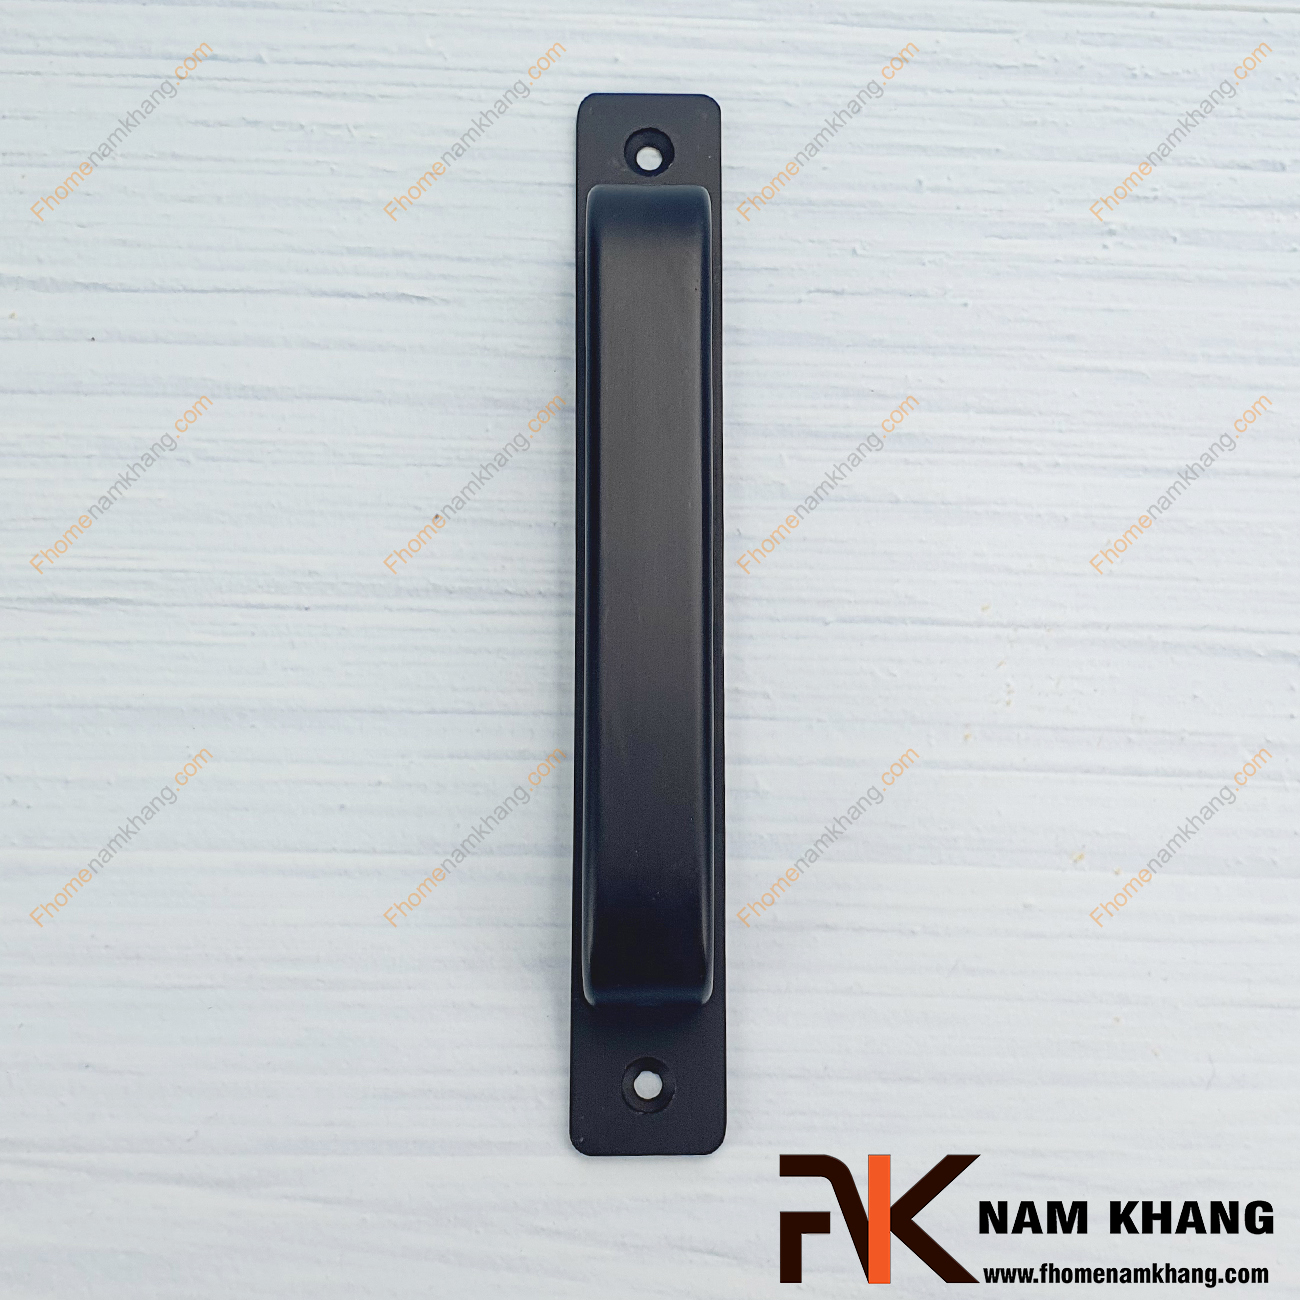 Tay nắm tủ dạng thanh ngang màu đen NK305T-D là dạng tay nắm phối hợp với thanh dài rất đơn giản nhưng lại cực kì sang trọng.